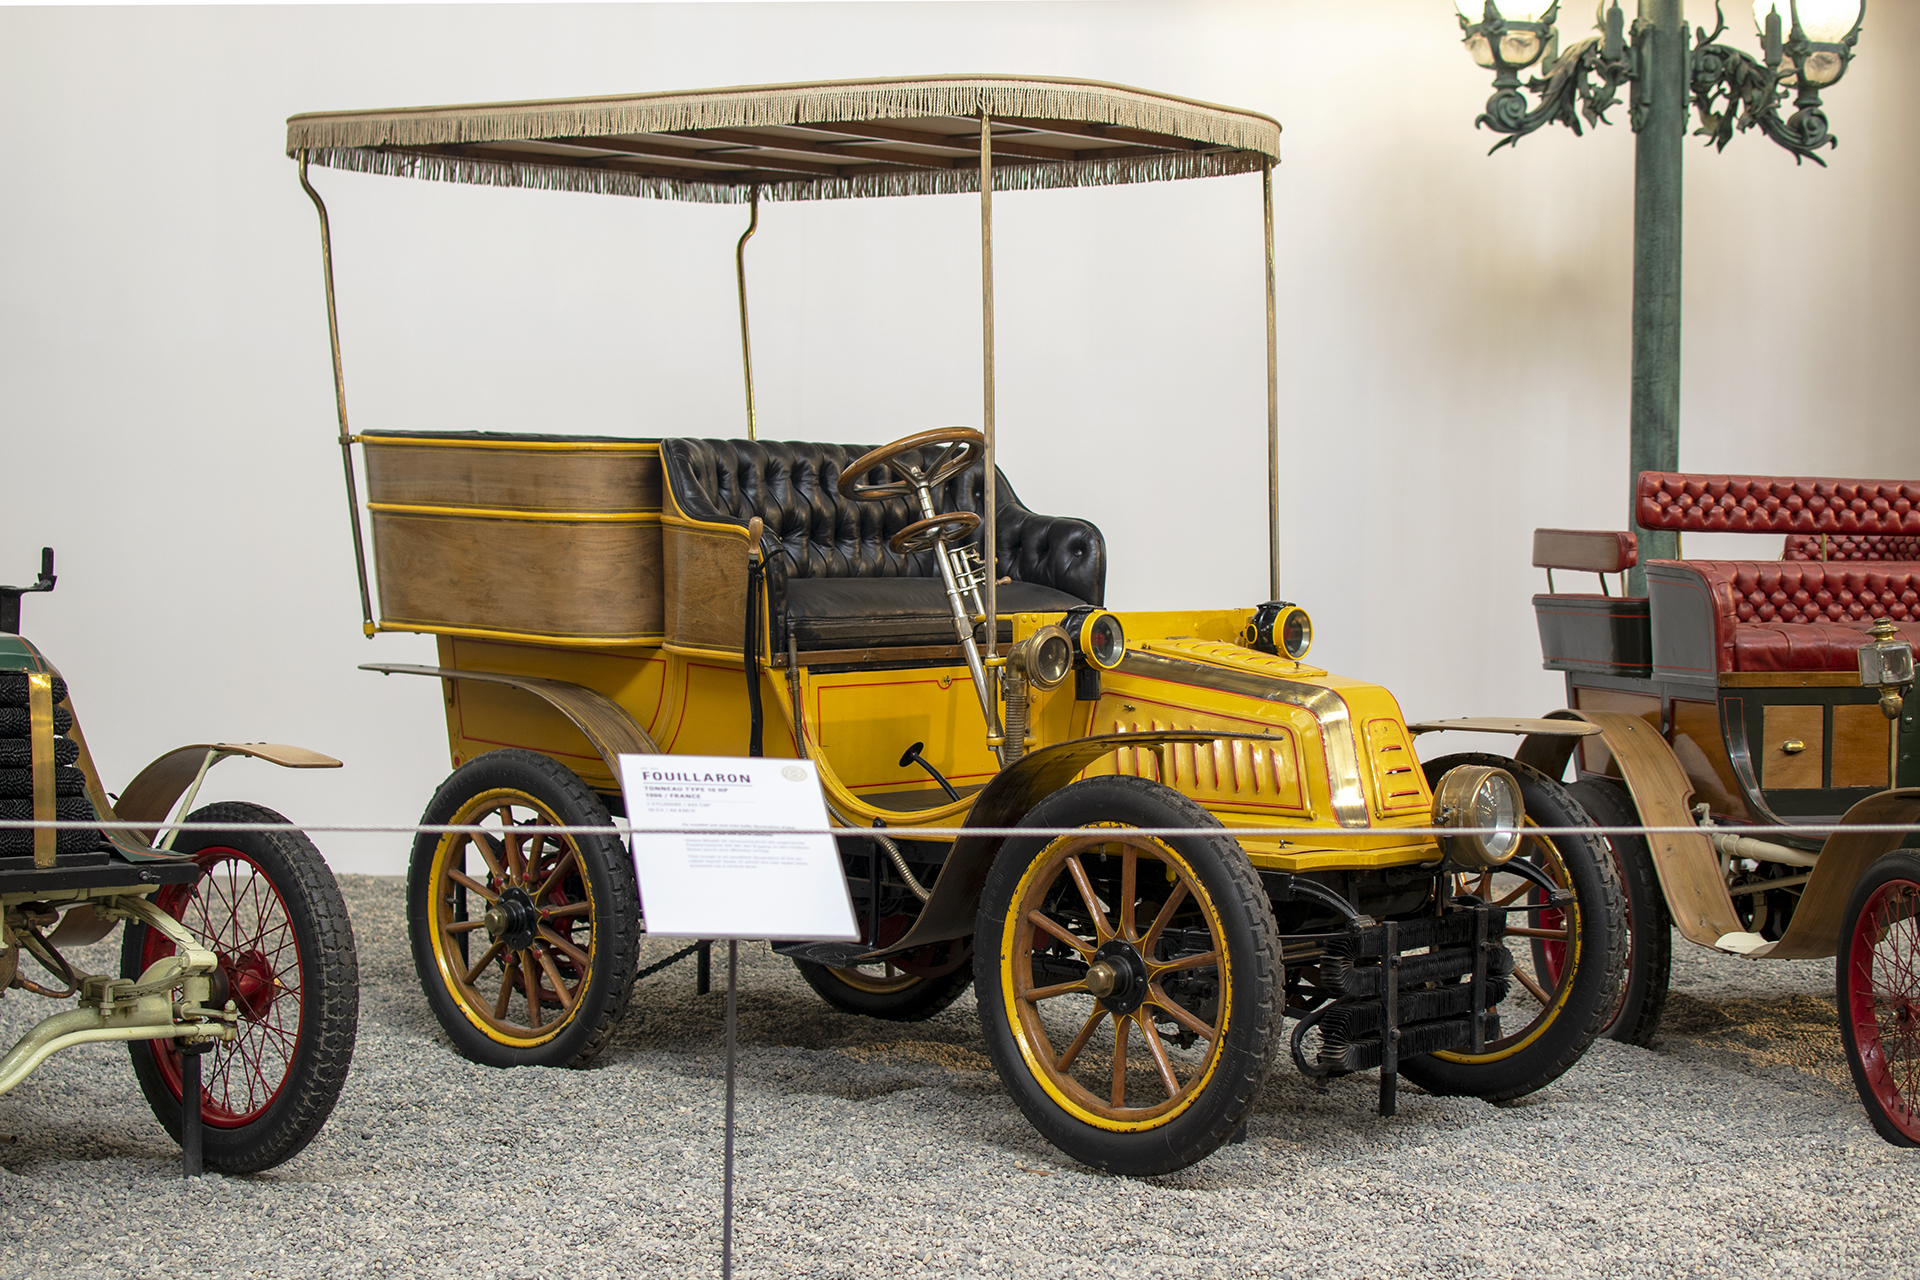 Fouillaron 10 HP tonneau 1906 - Cité de l'automobile, Collection Schlumpf, Mulhouse, 2020